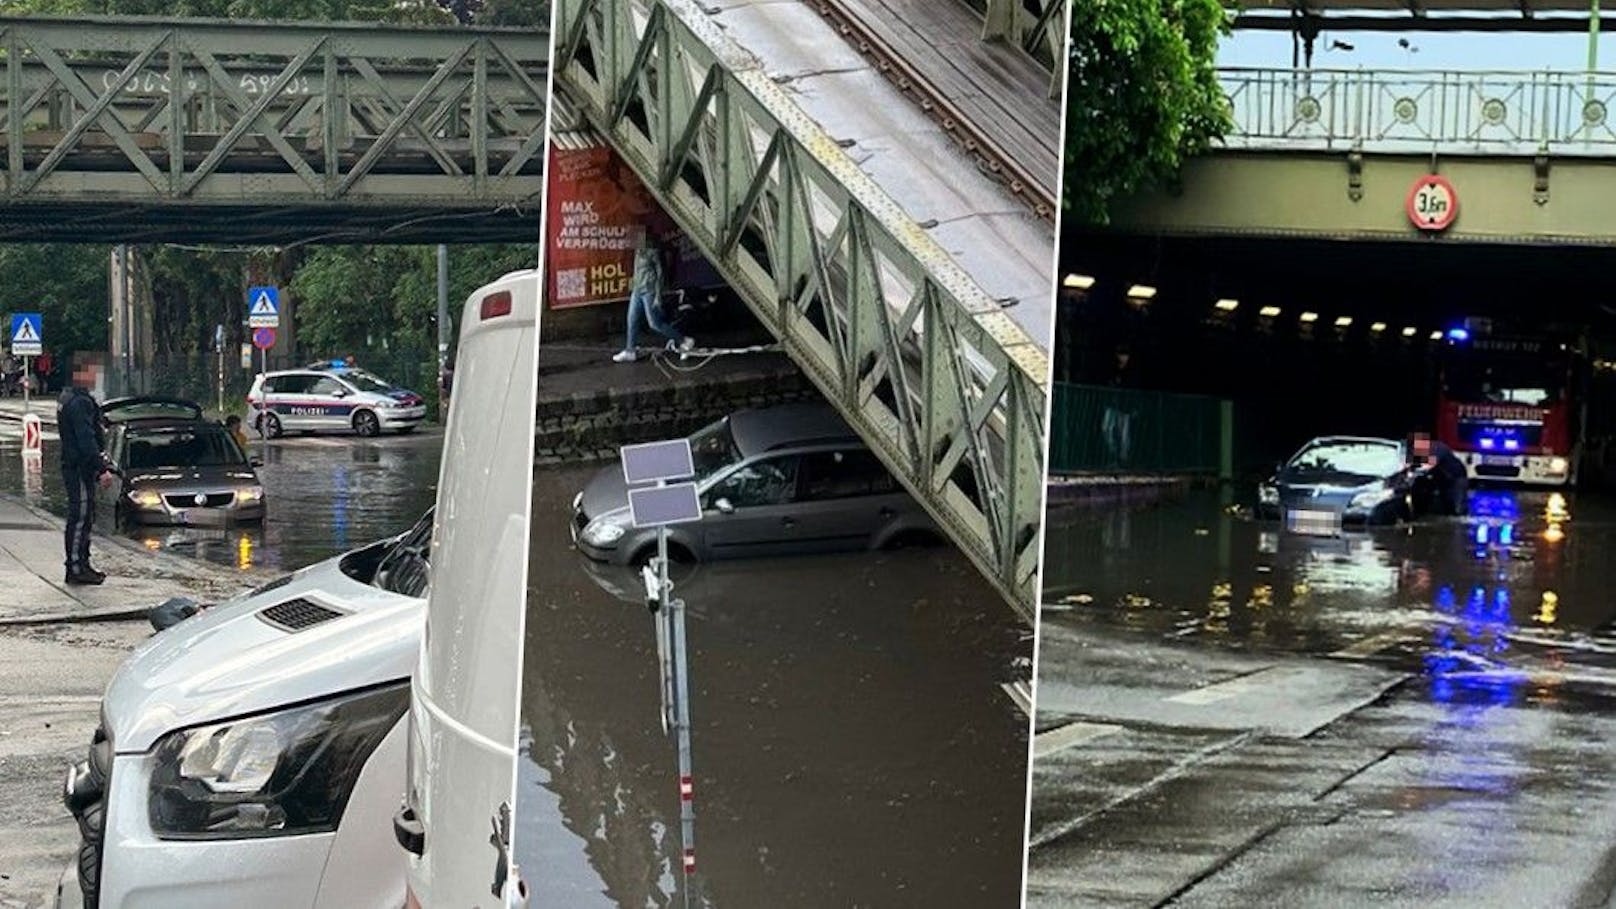 Wiener fahren in überflutete Tunnel, bleiben stecken